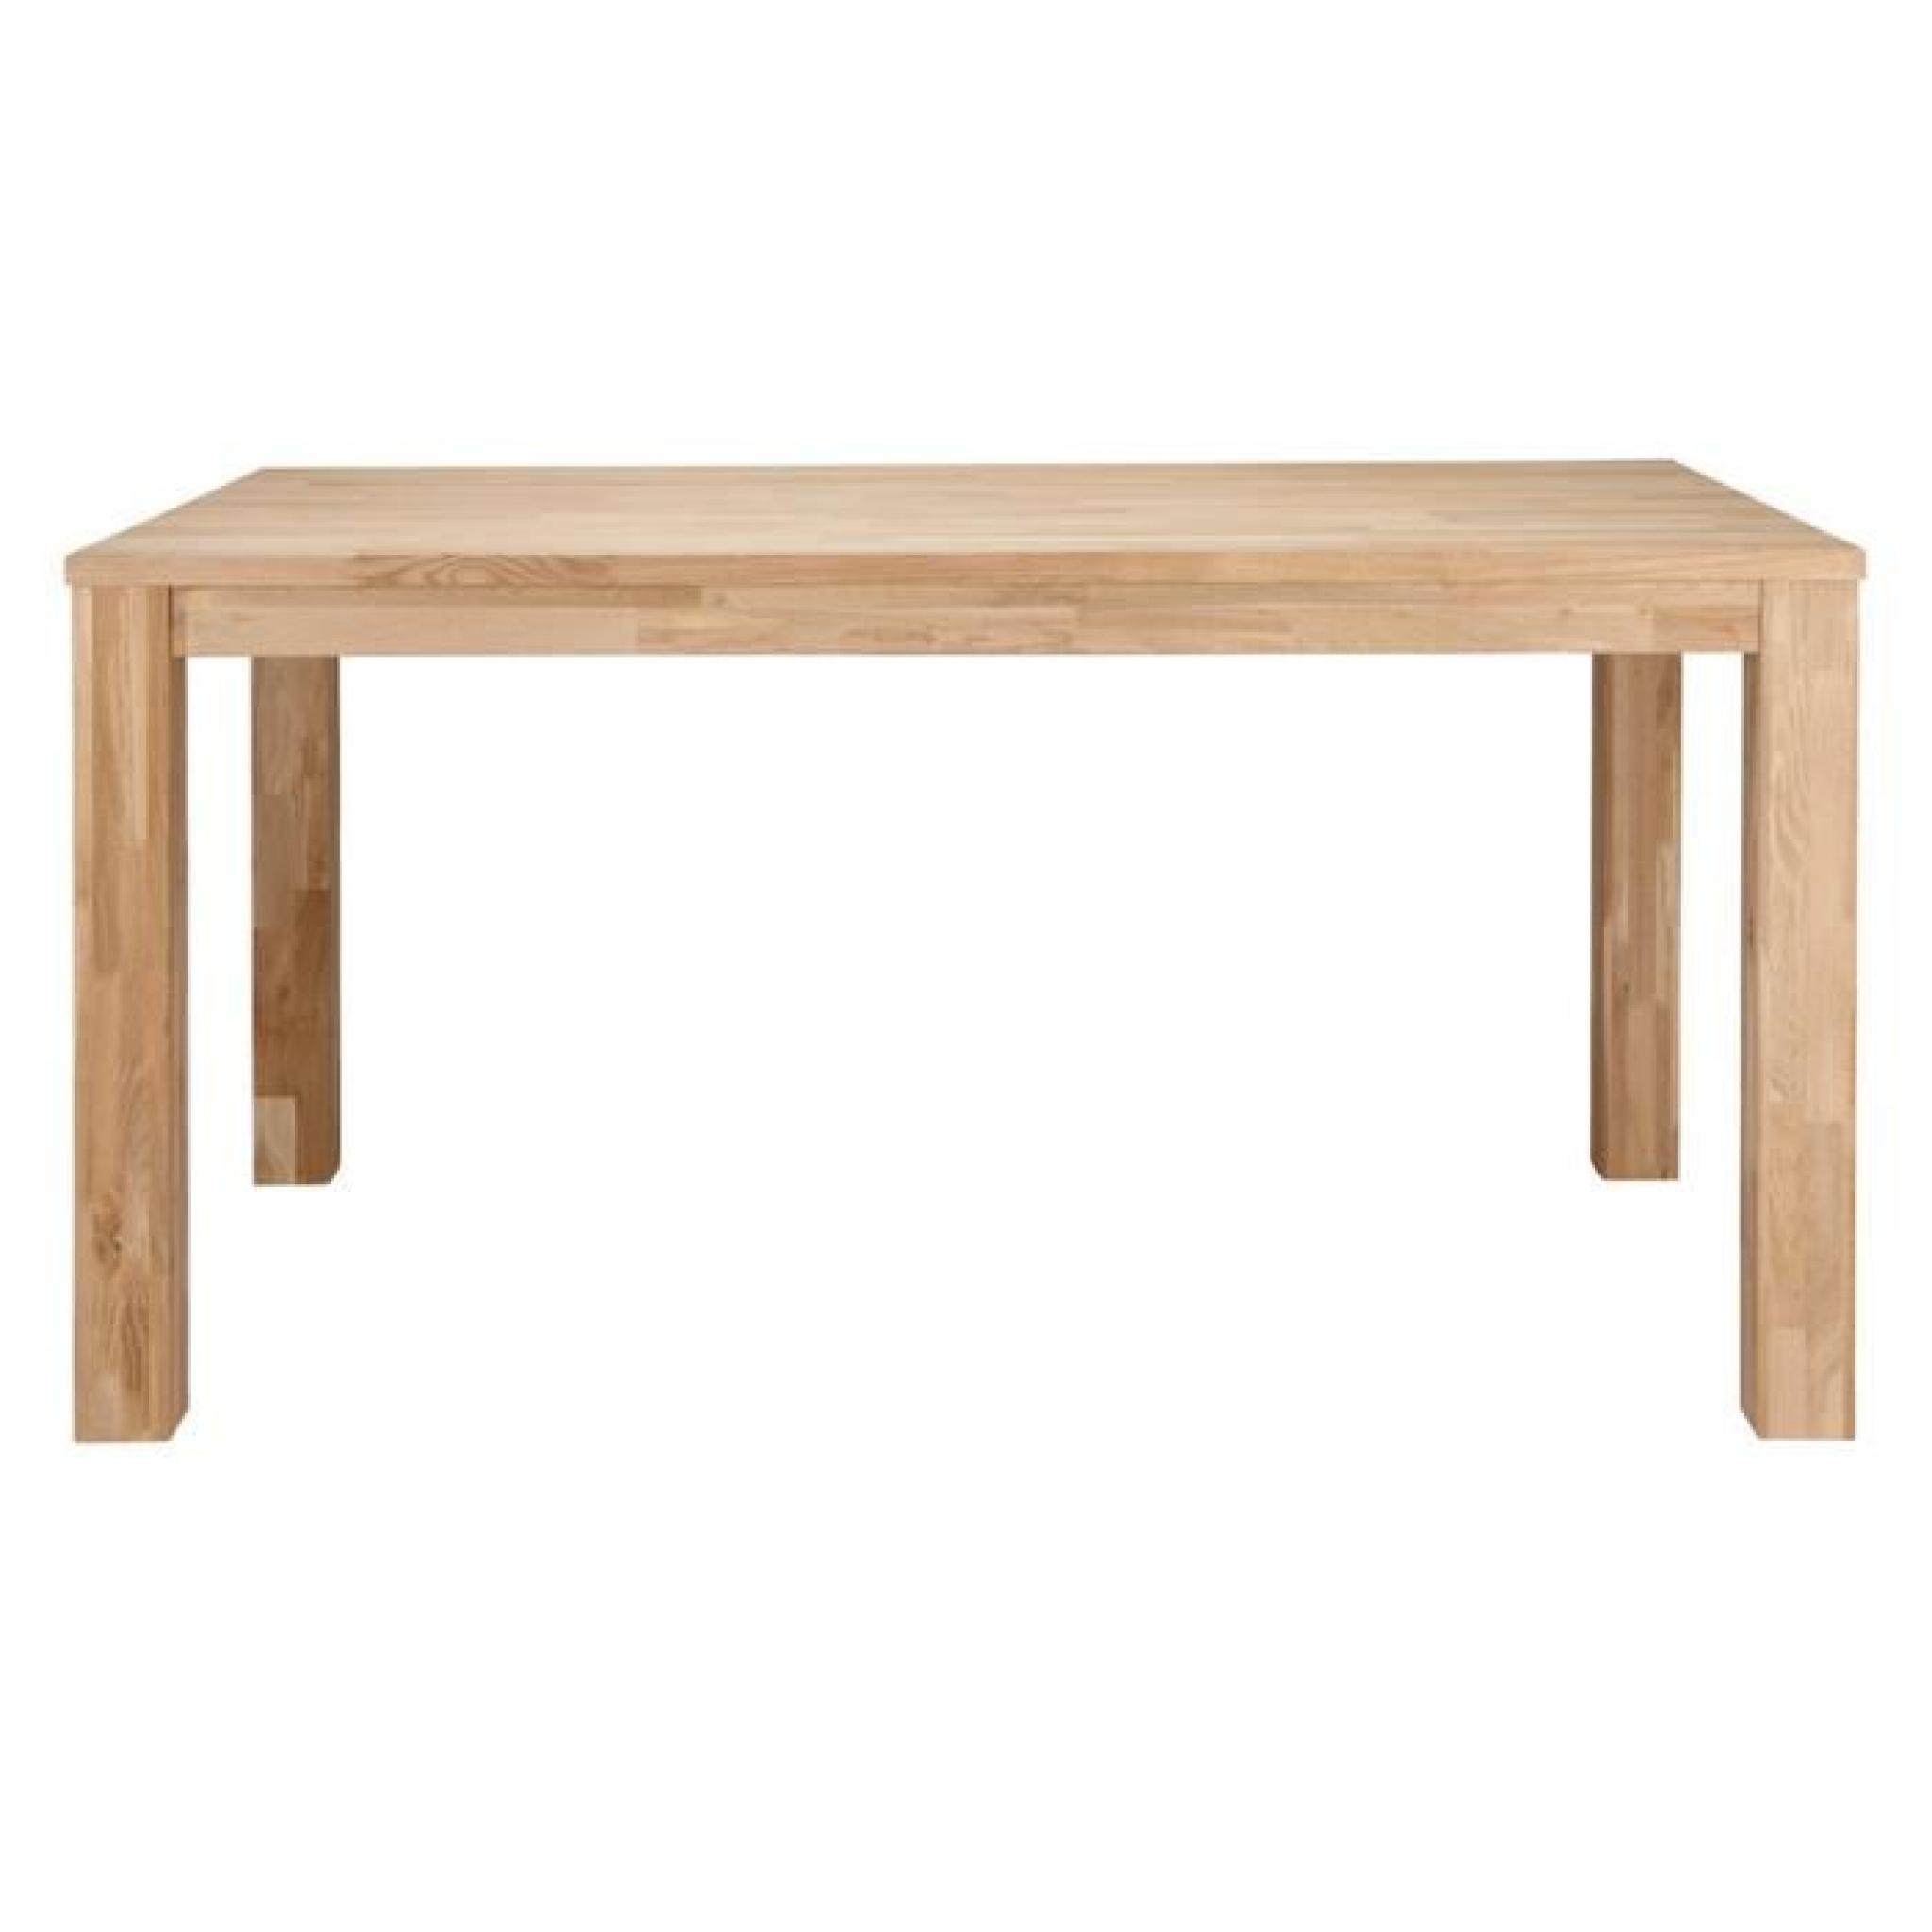 Table à manger rectangulaire chêne massif pieds 8x8cm, H 78 x L 180 x P 85 cm